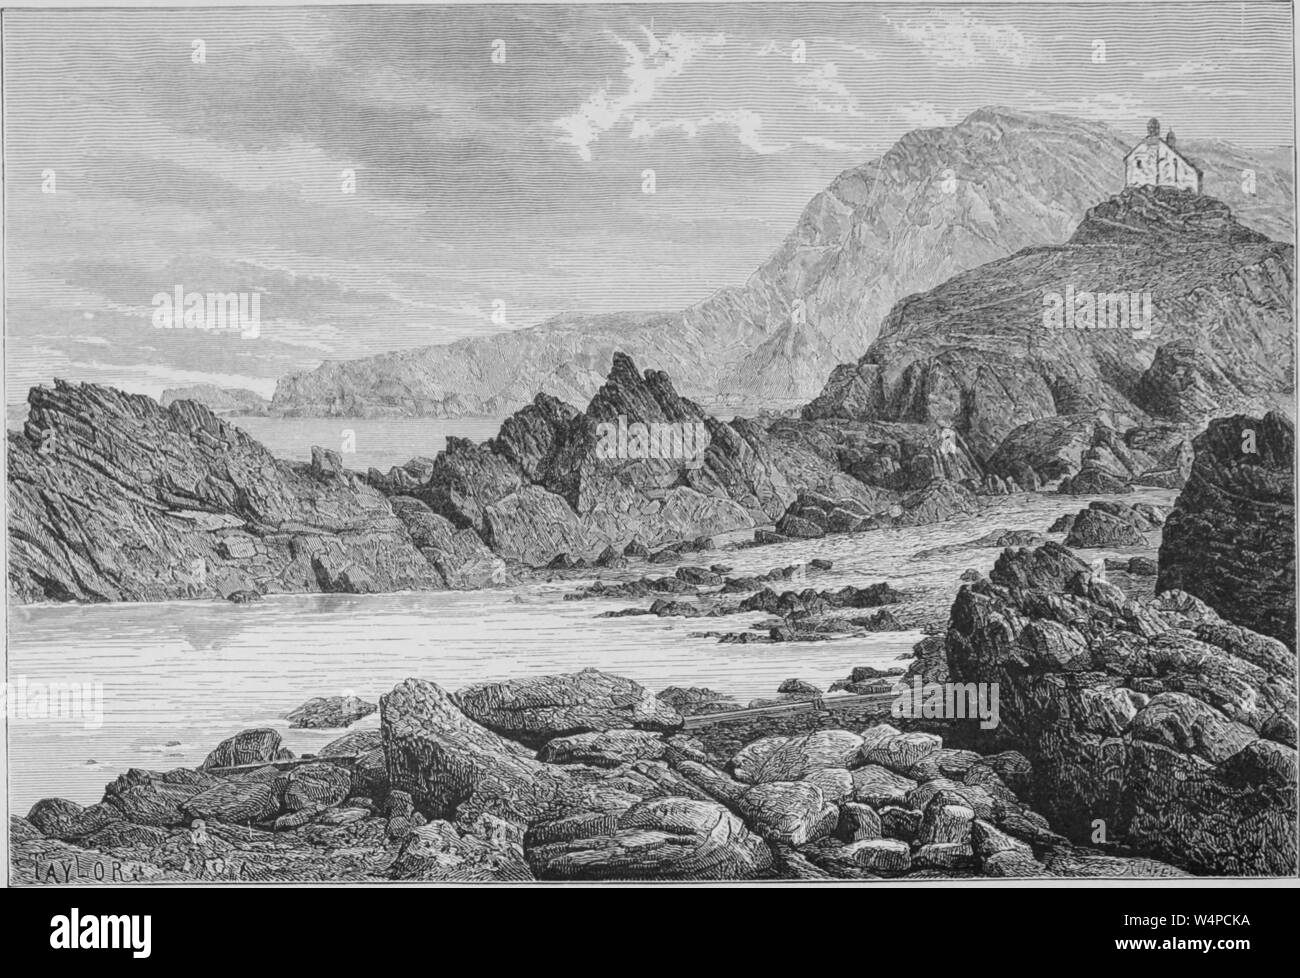 Gravure de la roche à Ilfracombe, Devon, Angleterre, du livre "La terre et ses habitants" par Elisee Reclus, 1881. Avec la permission de Internet Archive. () Banque D'Images